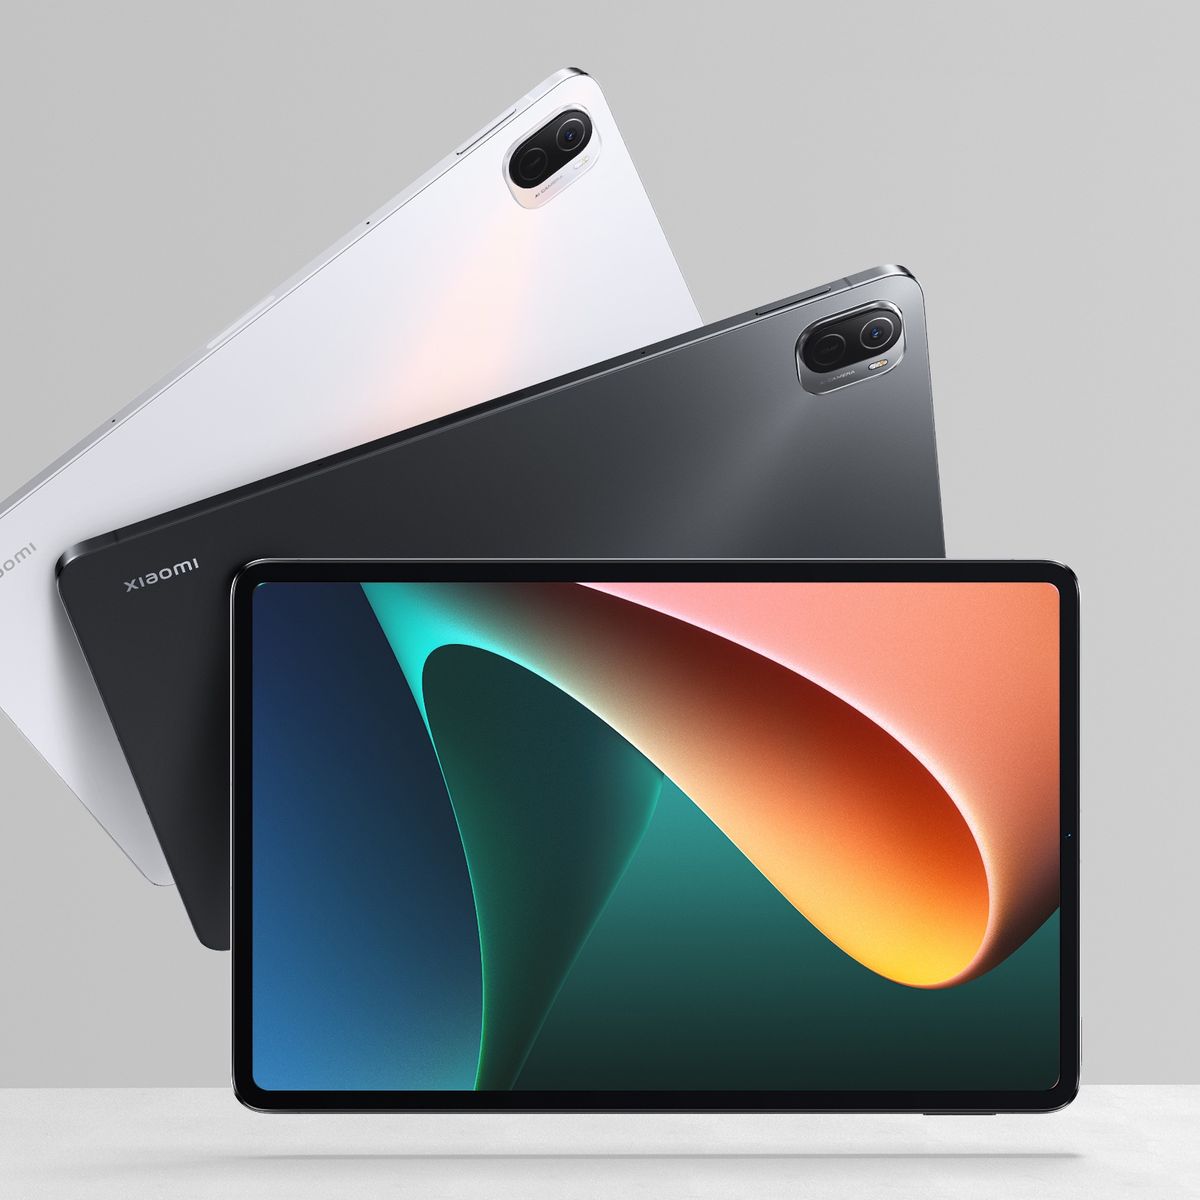 Xiaomi Pad 6 y 6 Pro: así son las nuevas tabletas de la compañía